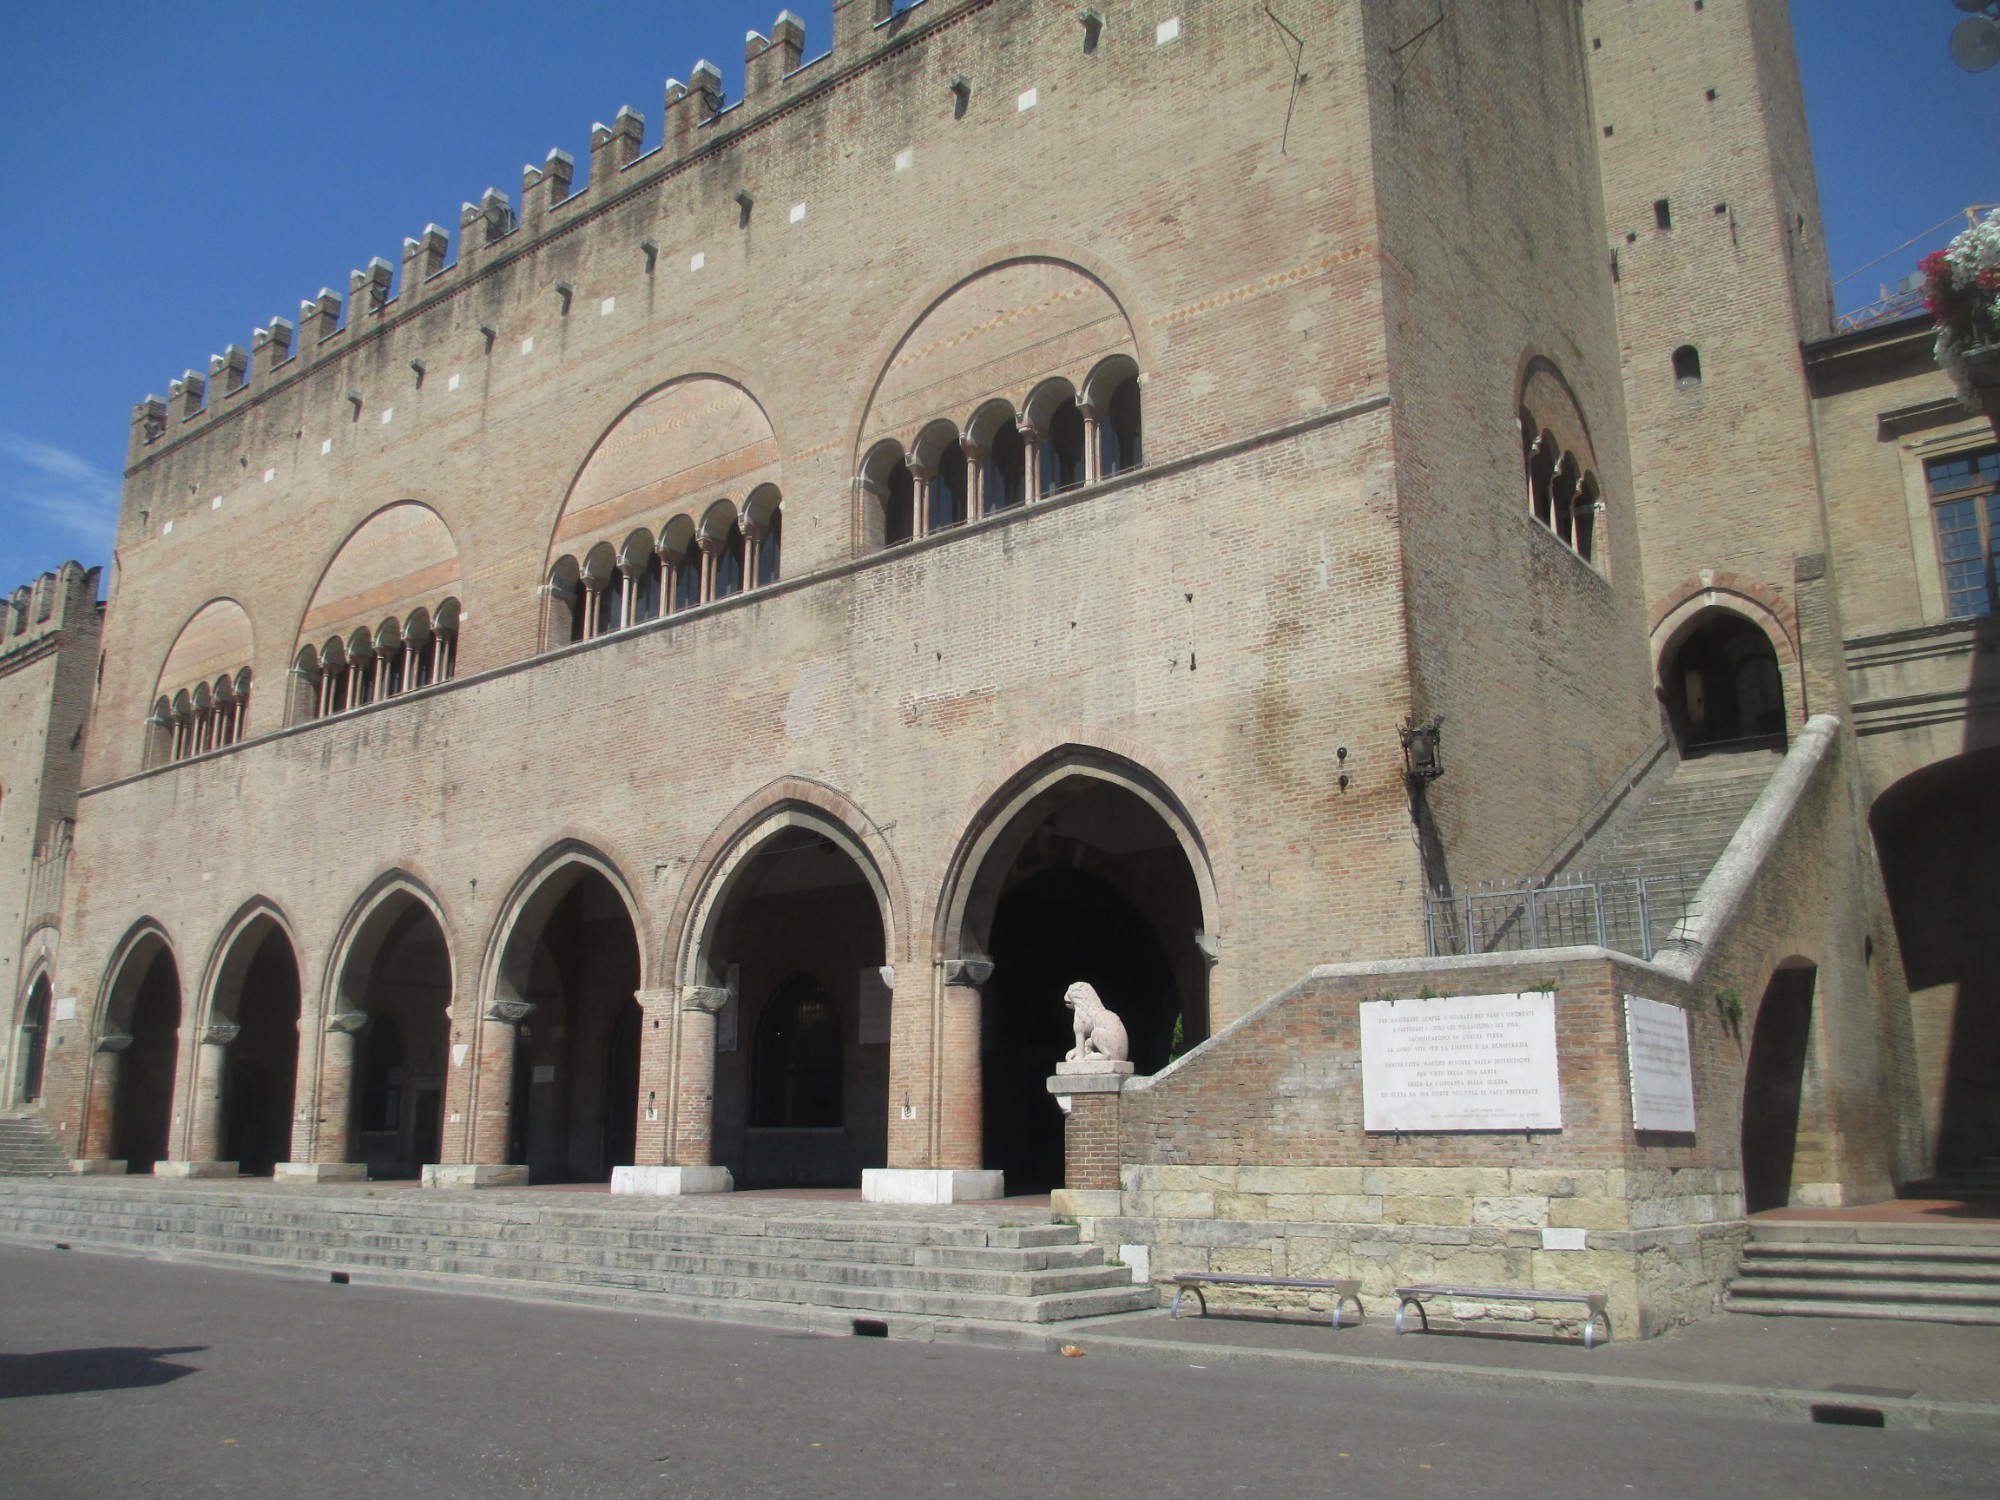 Римини. Дворец на площади Кавур. (17.07.2014)